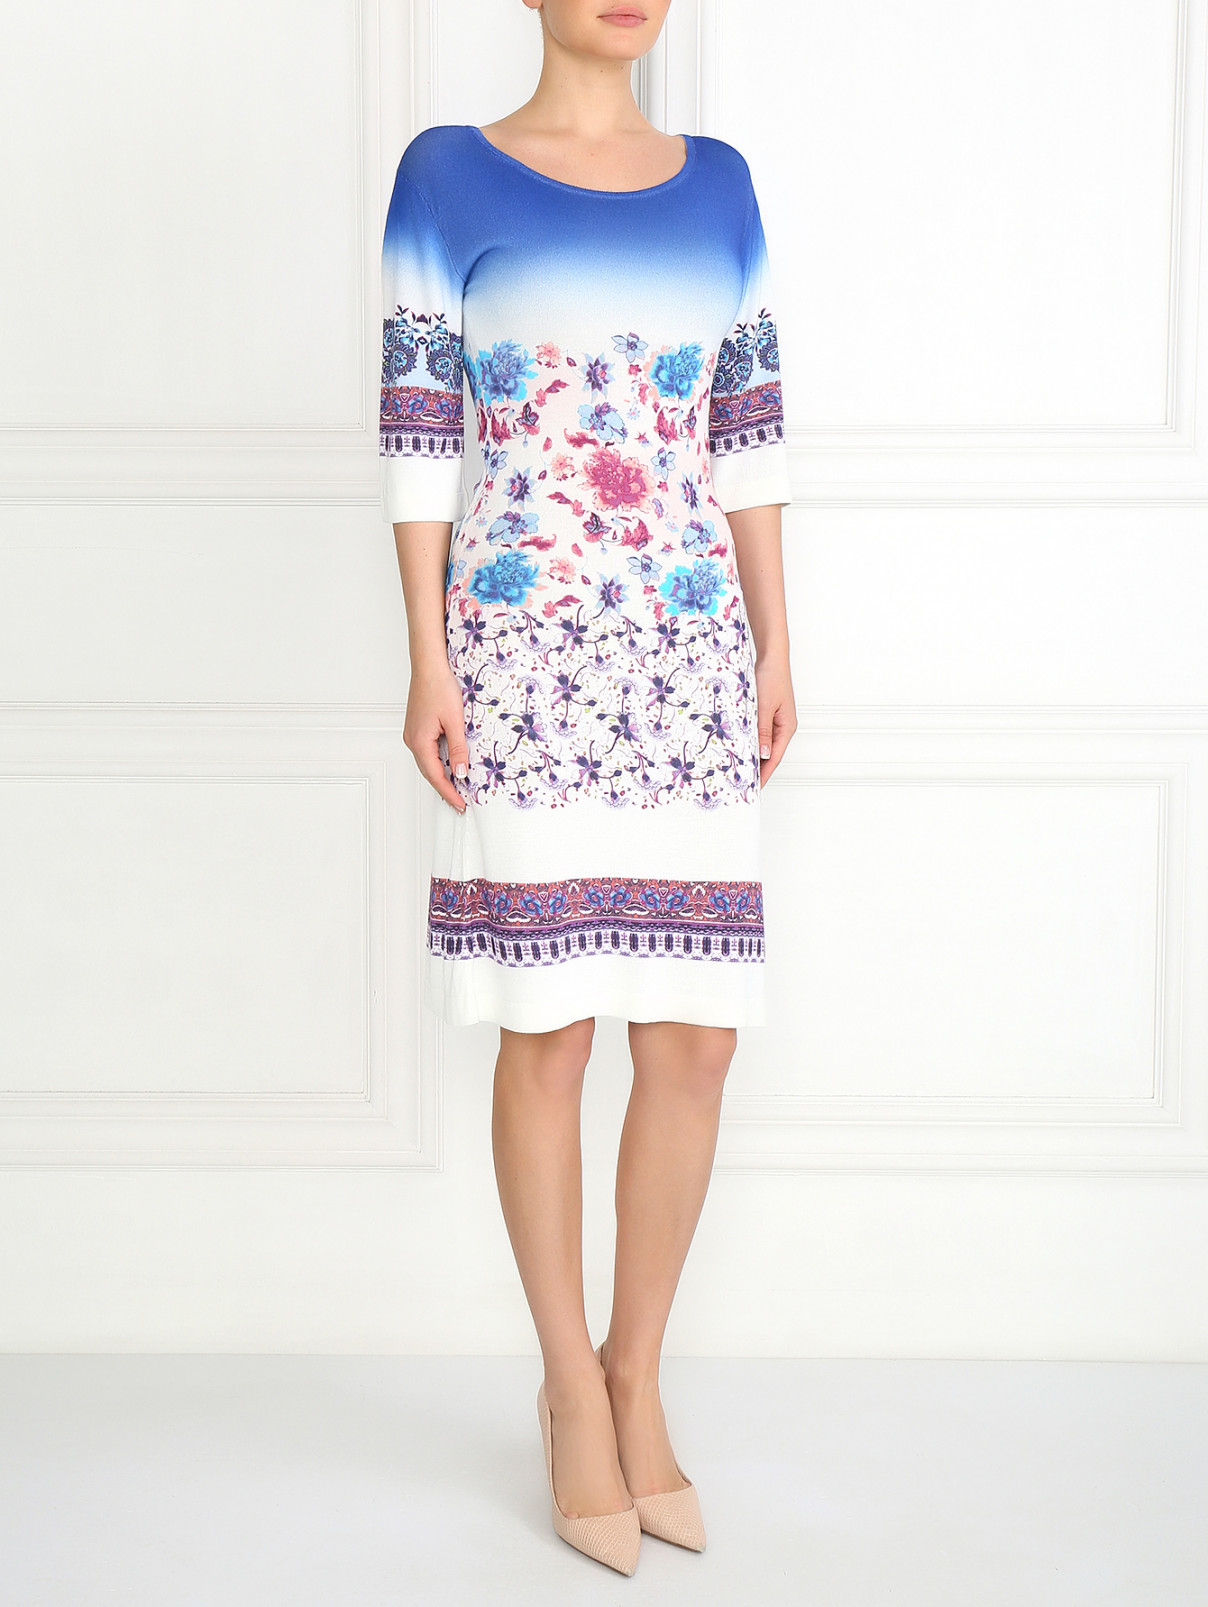 Трикотажное платье с узором Etro  –  Модель Общий вид  – Цвет:  Узор